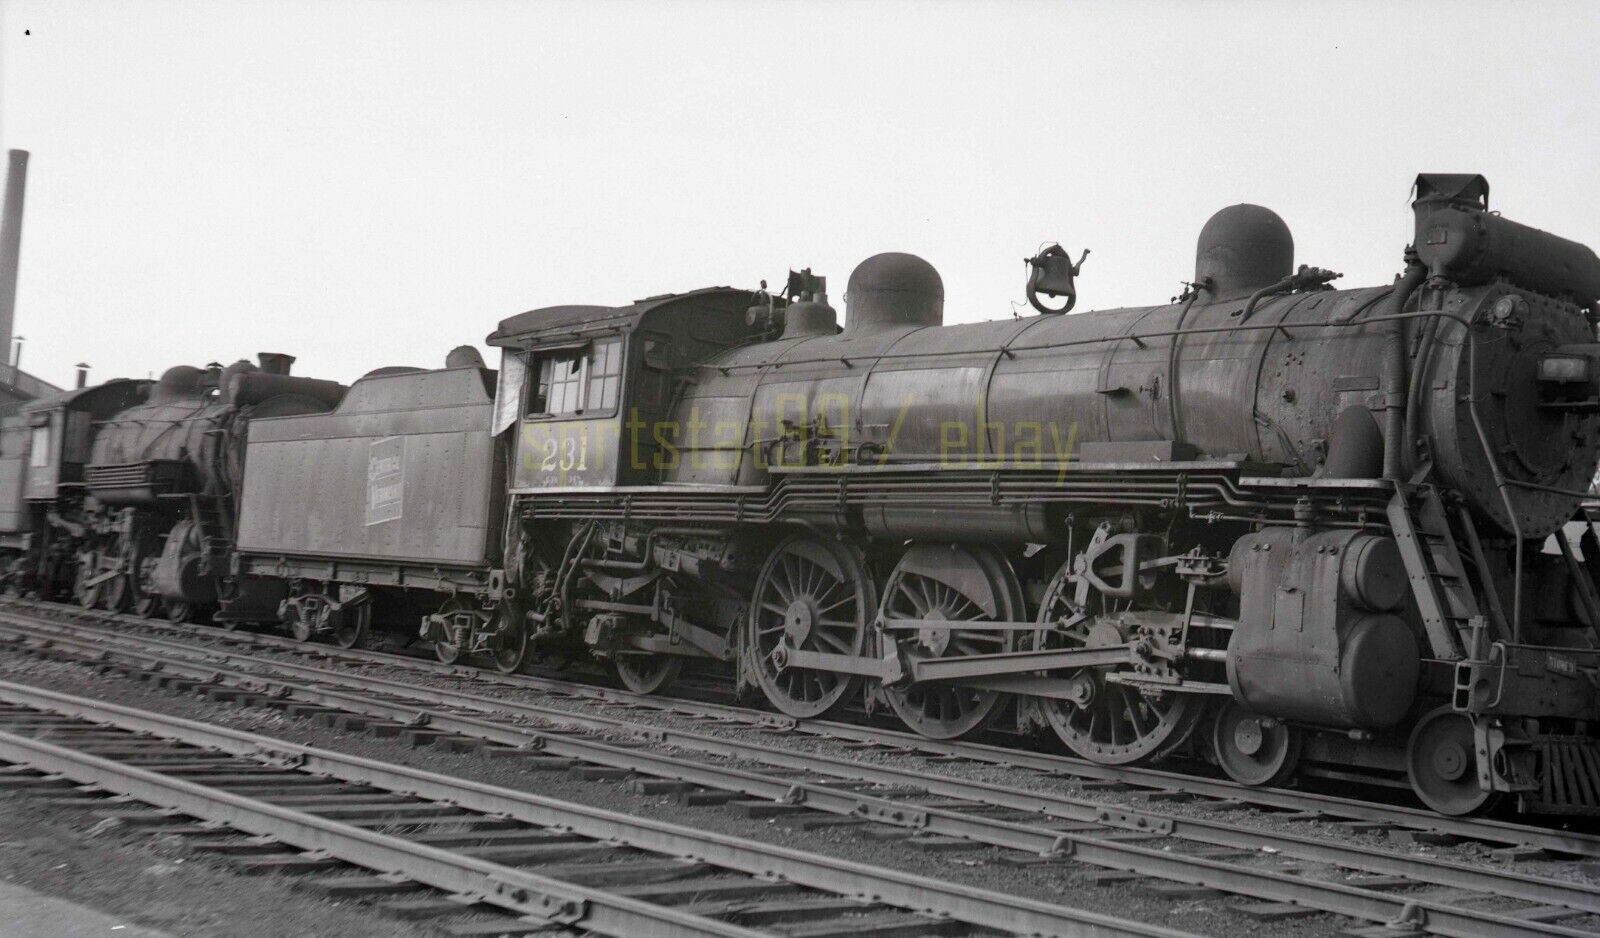 1952 CV Central Vermont Locomotive #231 @ St Albans - Vintage Railroad Negative